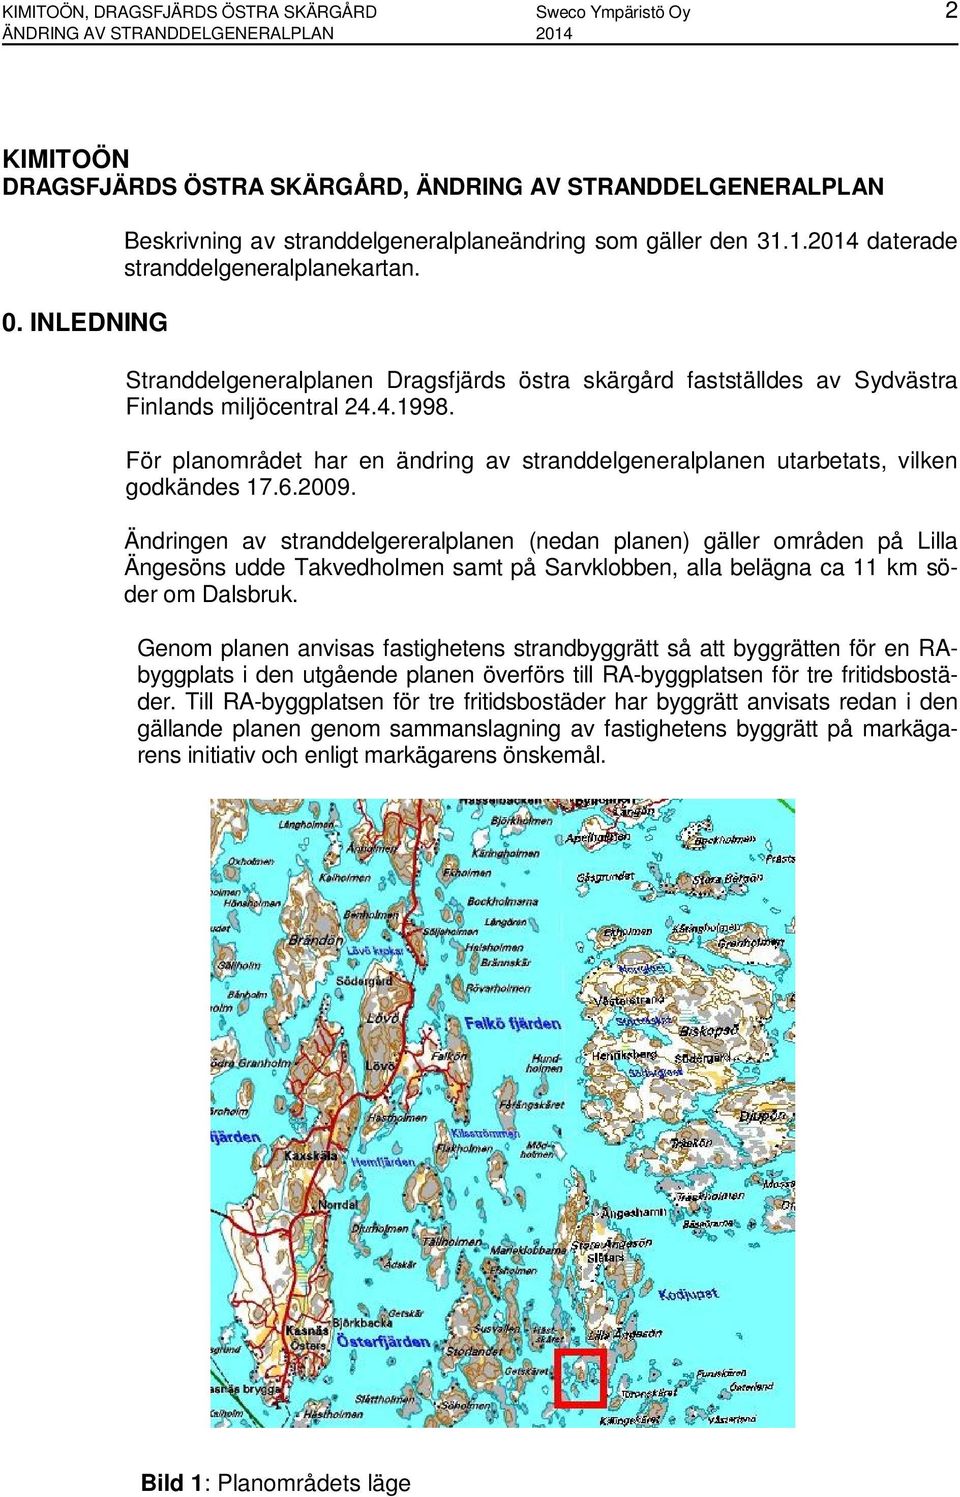 Stranddelgeneralplanen Dragsfjärds östra skärgård fastställdes av Sydvästra Finlands miljöcentral 24.4.1998. För planområdet har en ändring av stranddelgeneralplanen utarbetats, vilken godkändes 17.6.